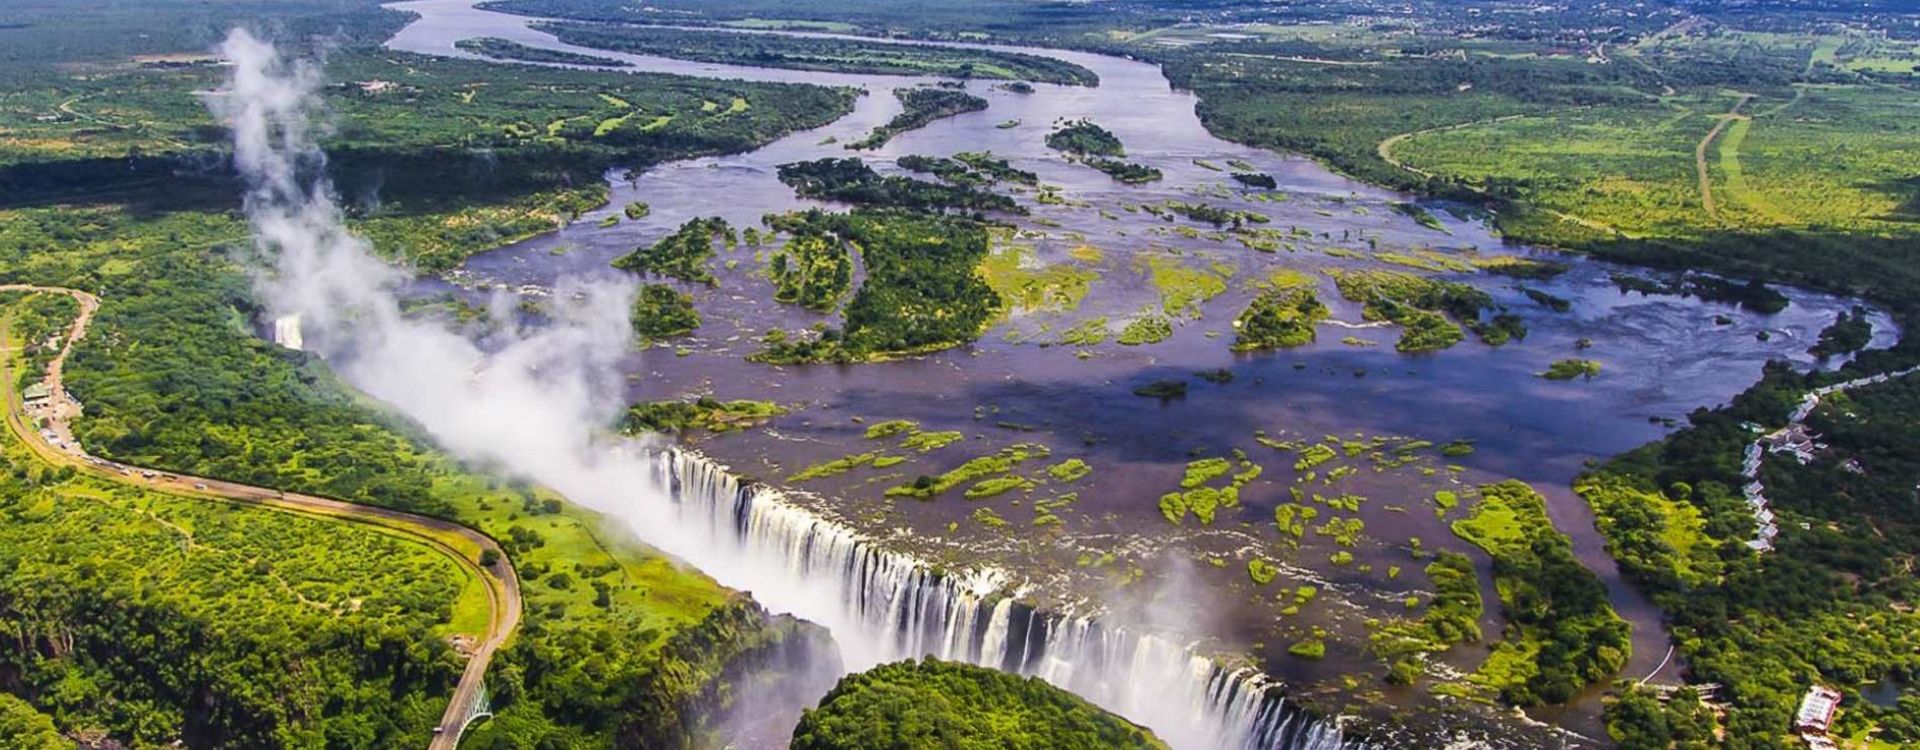 Victoria Falls Tourist Attractions